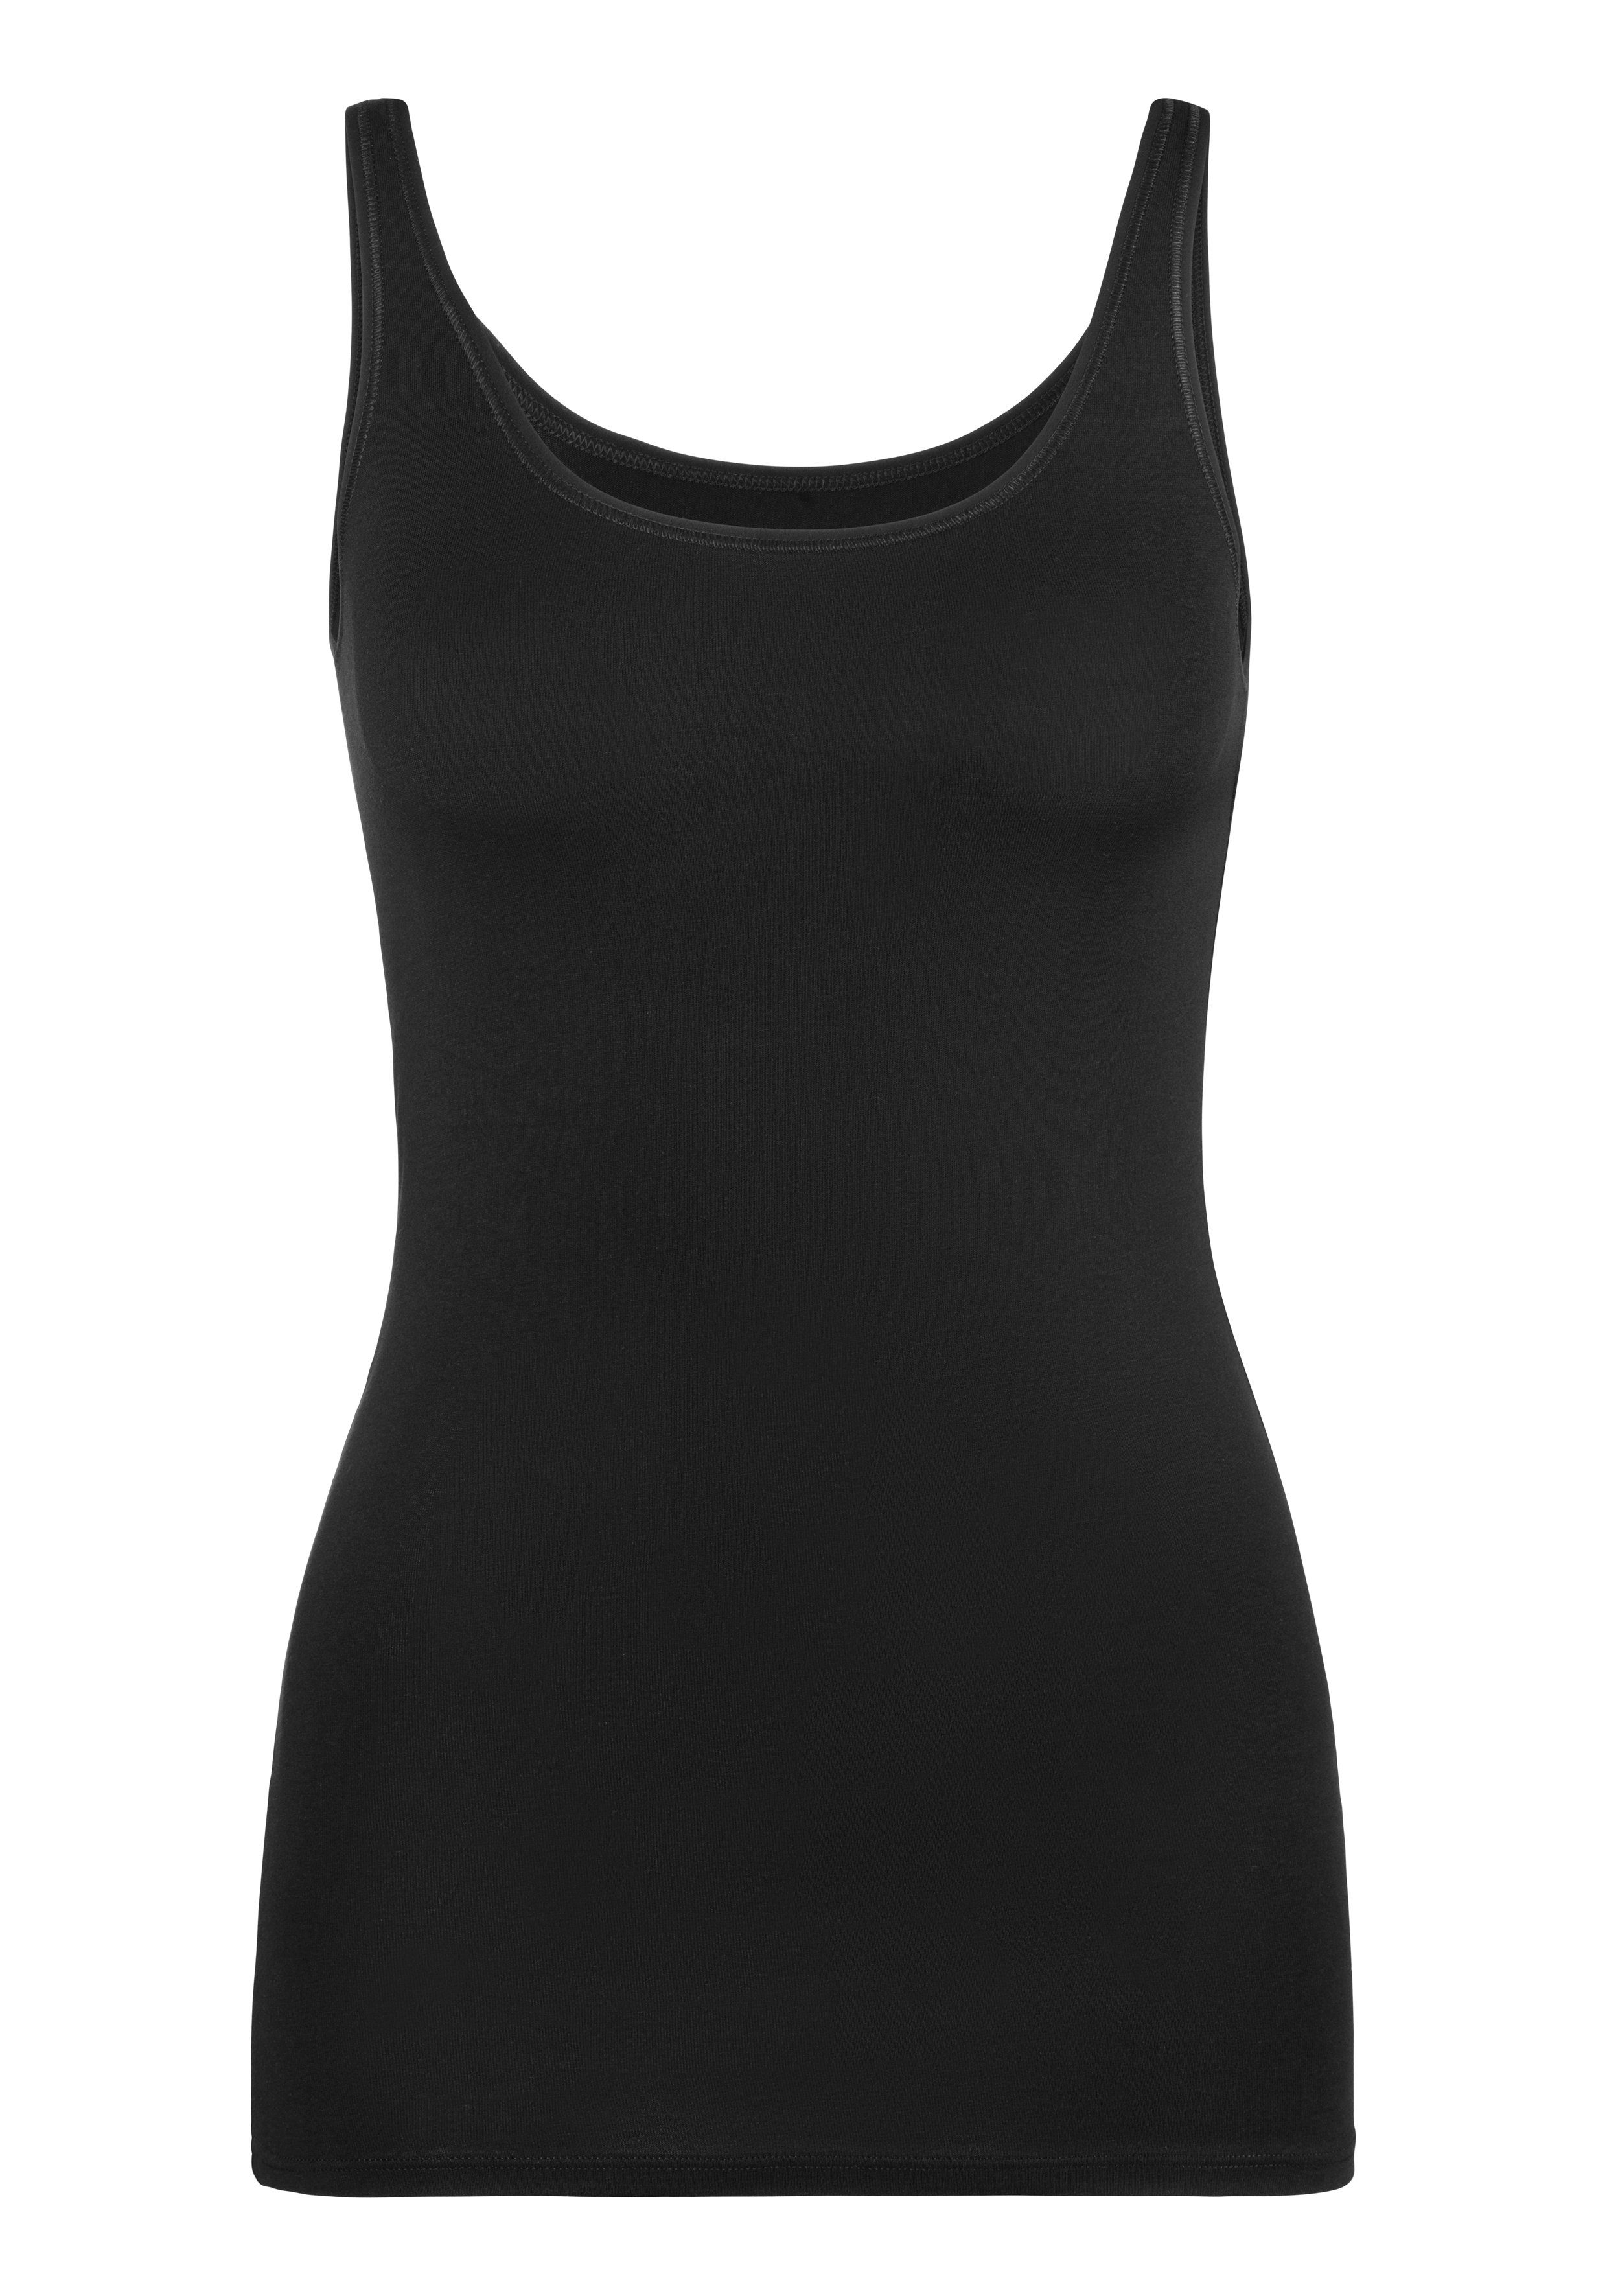 Schiesser Unterhemd (2er-Pack) Single-Jersey-Qualität mit elastischer schwarz/sand